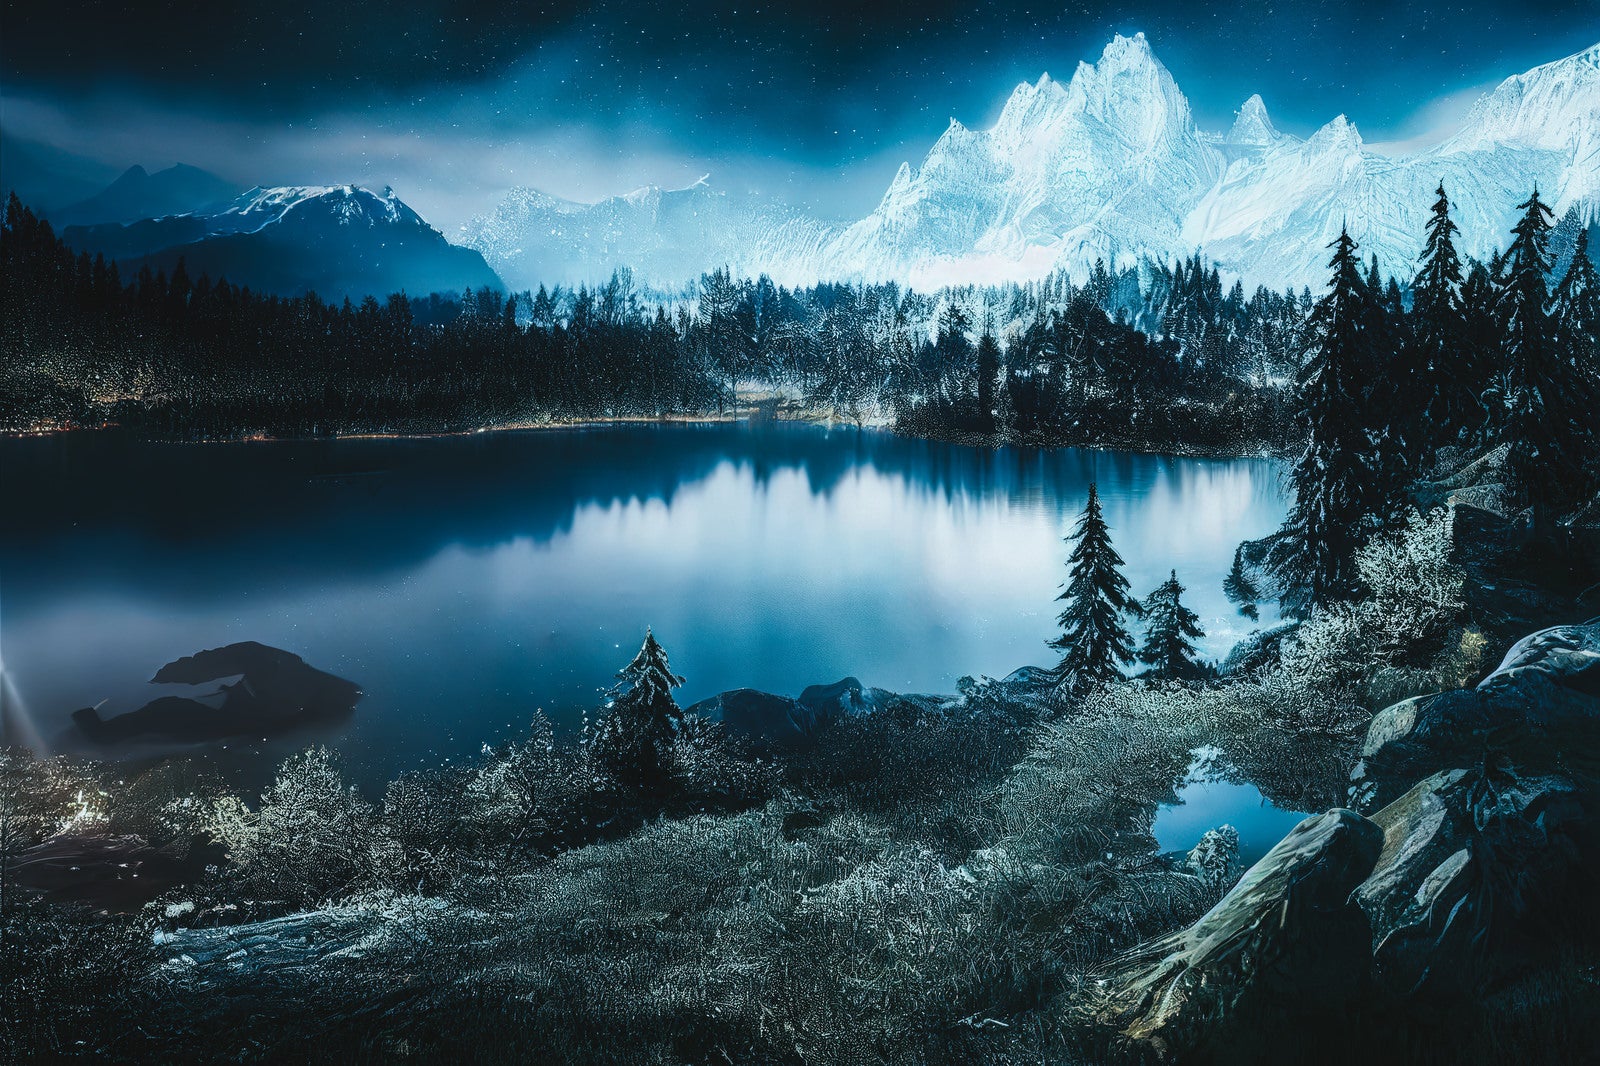 「雪山と静寂な湖」の写真